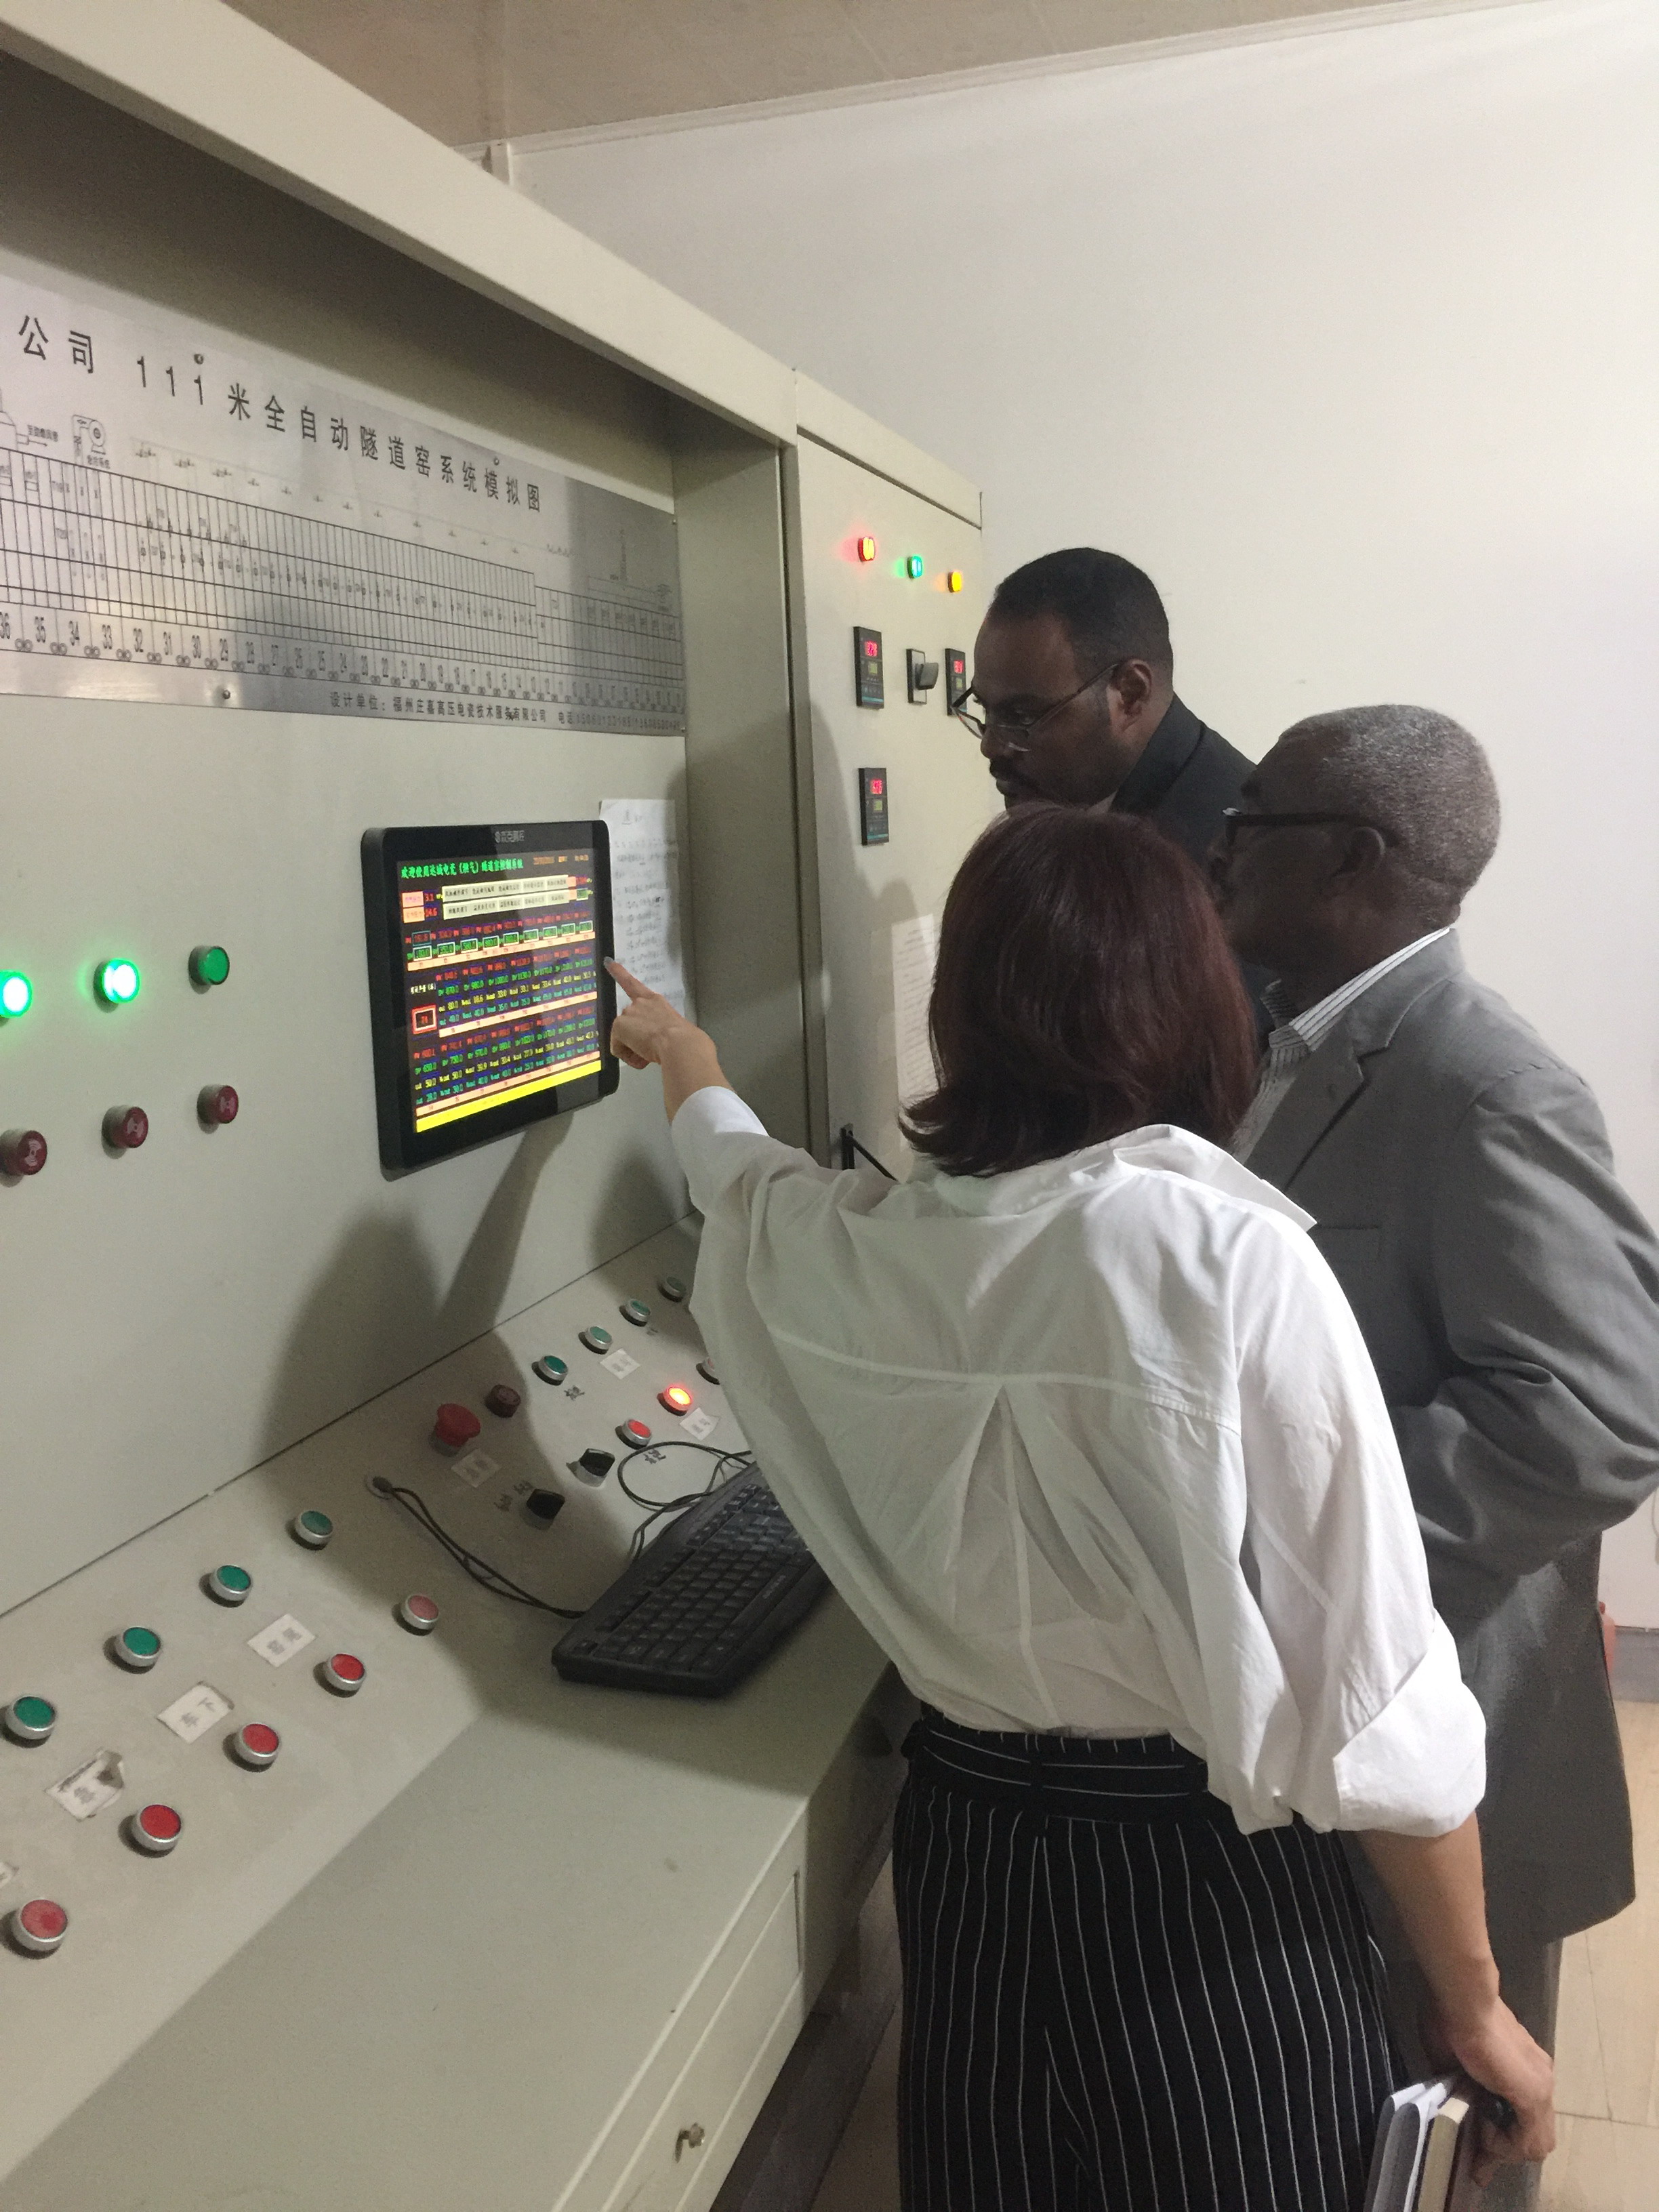 اجتازت شركتنا بنجاح قبول المصنع من مكتب الطاقة الكهربائية في السودان.